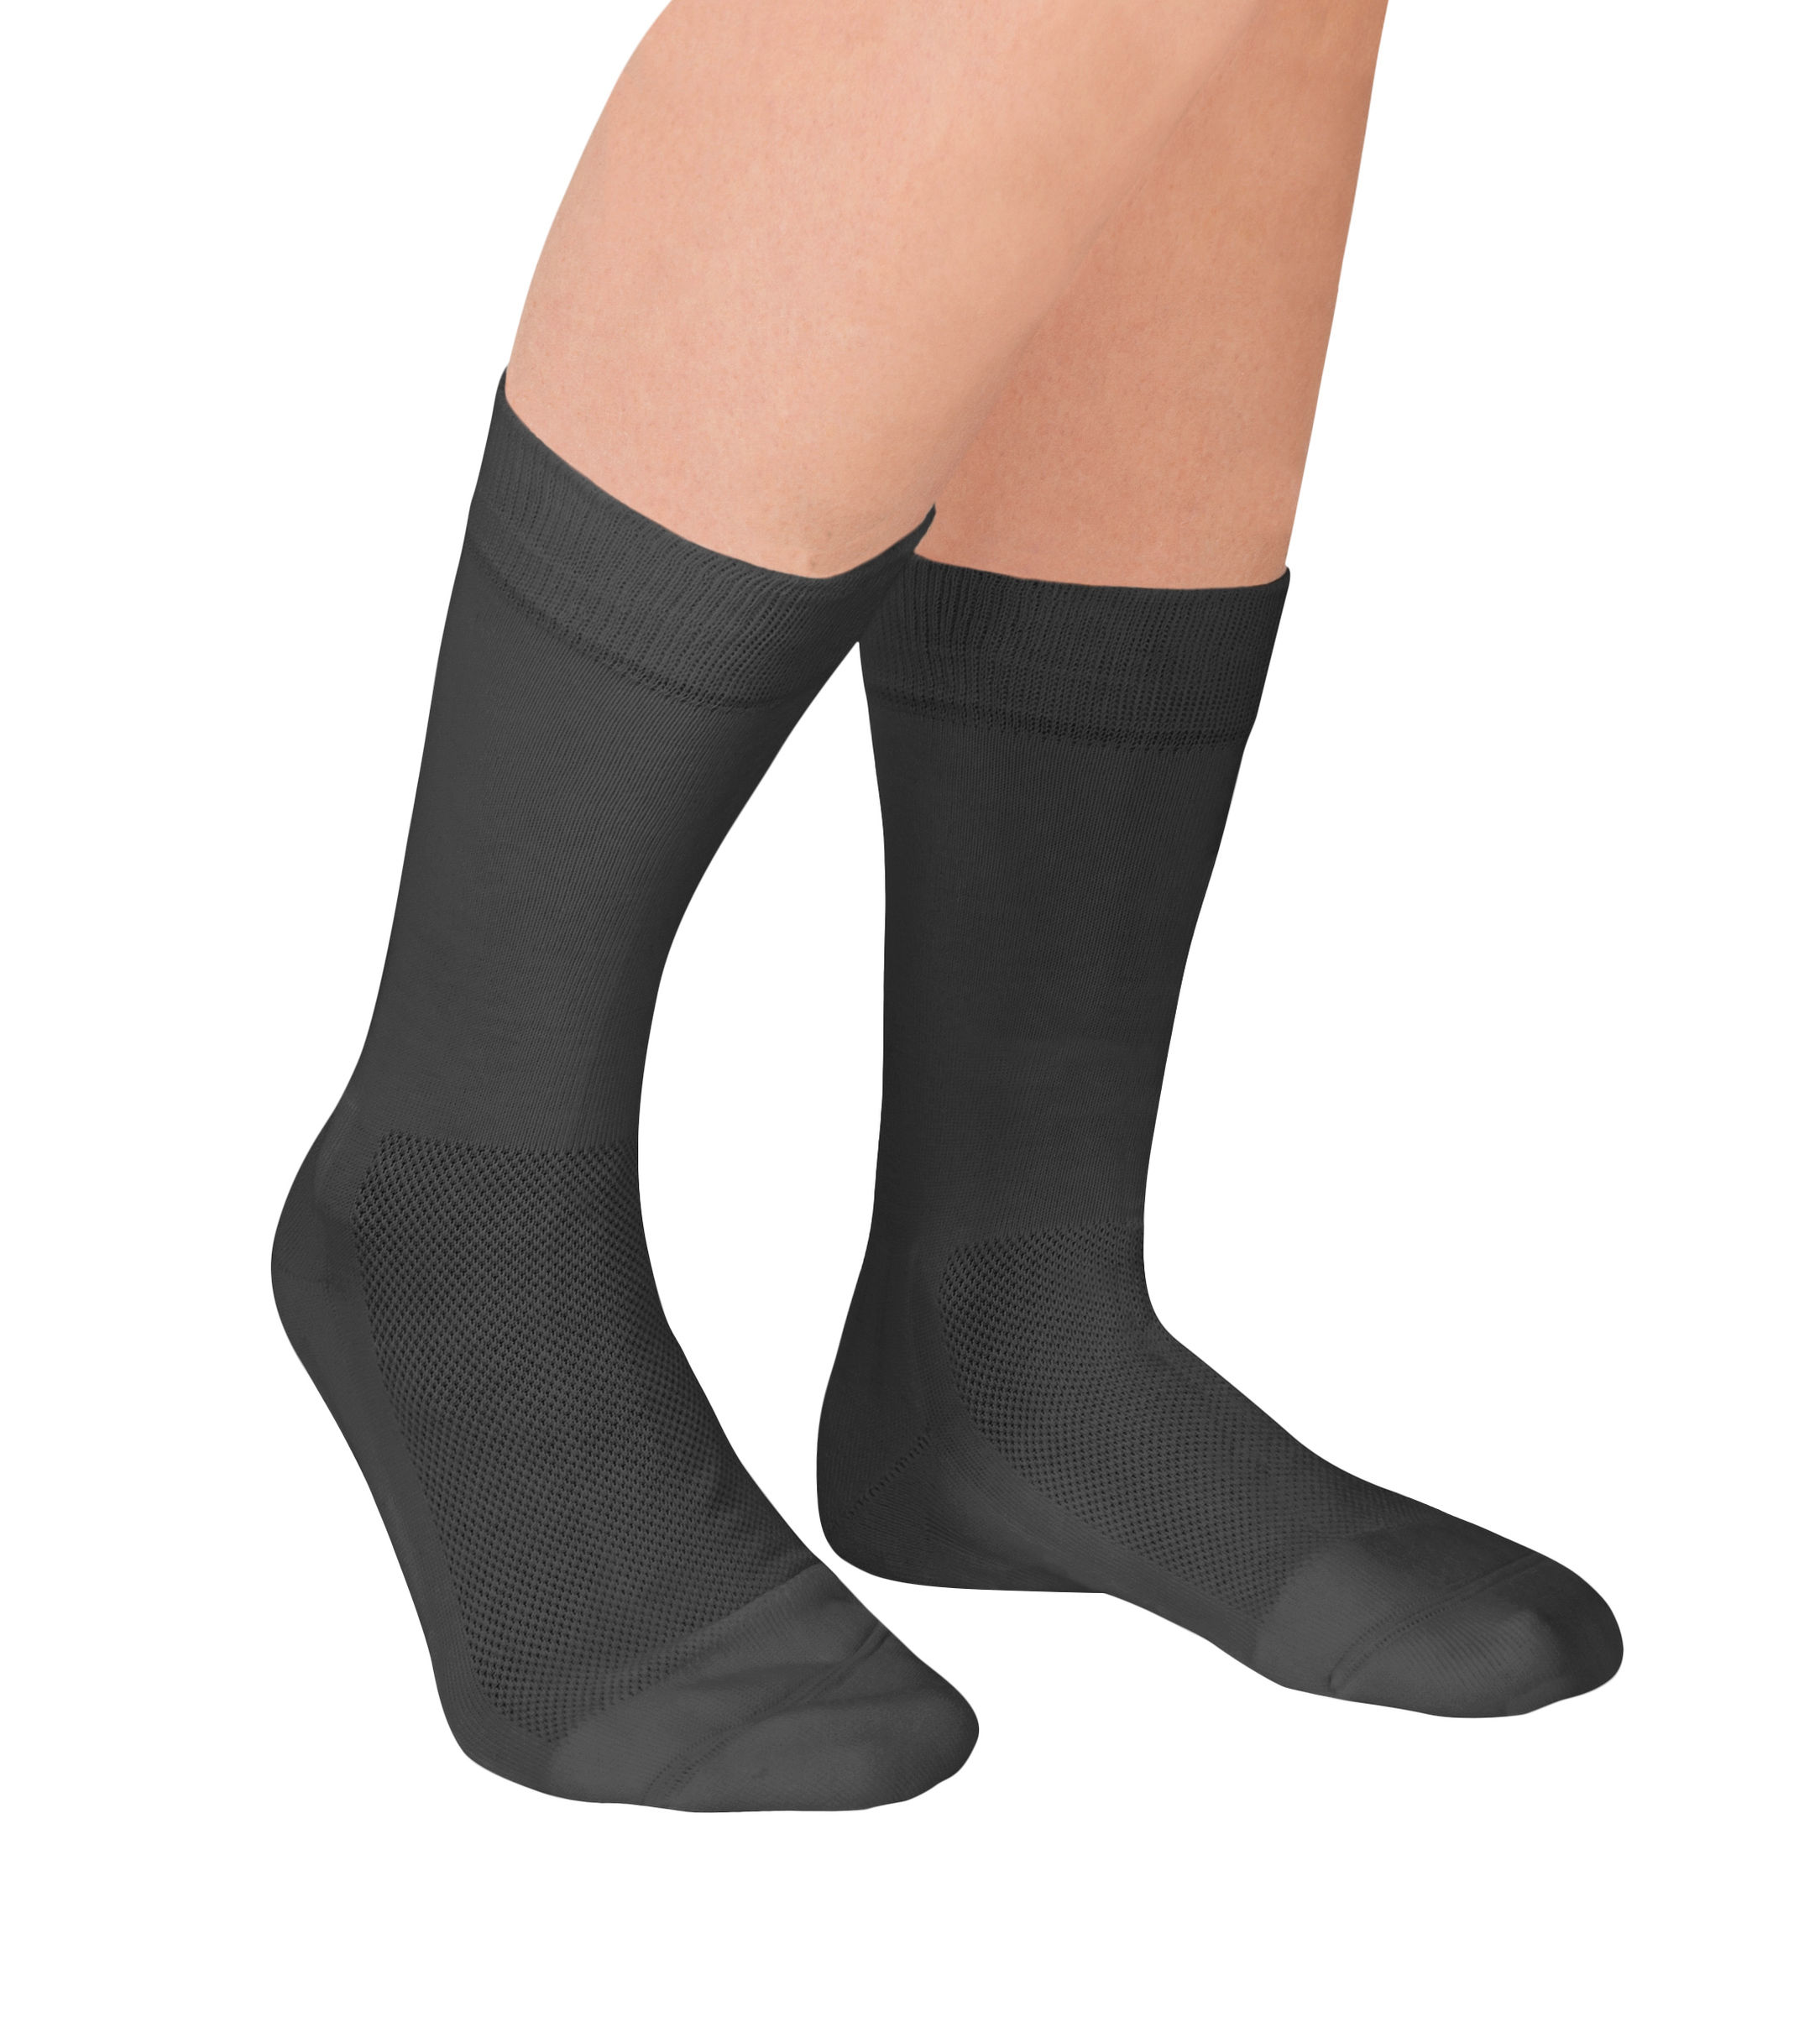 Socken Venenfreund Farbe: schwarz, Grösse: 40-42 | Weltbild.ch